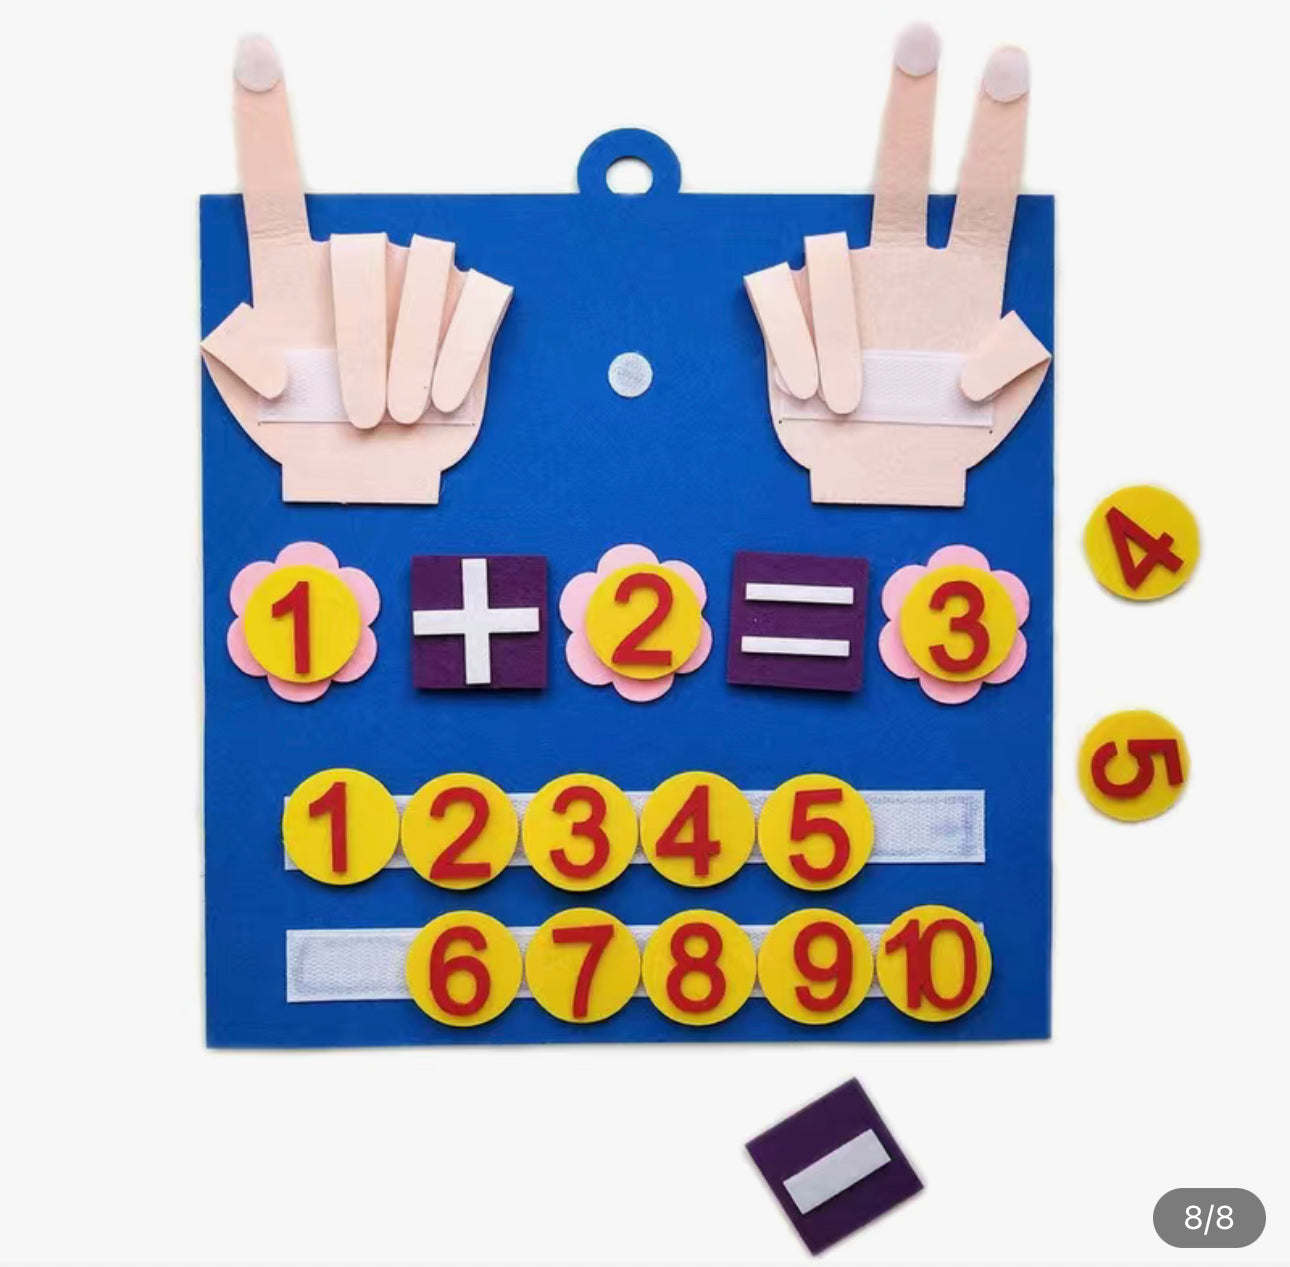 Contar los números de los dedos Matemáticas